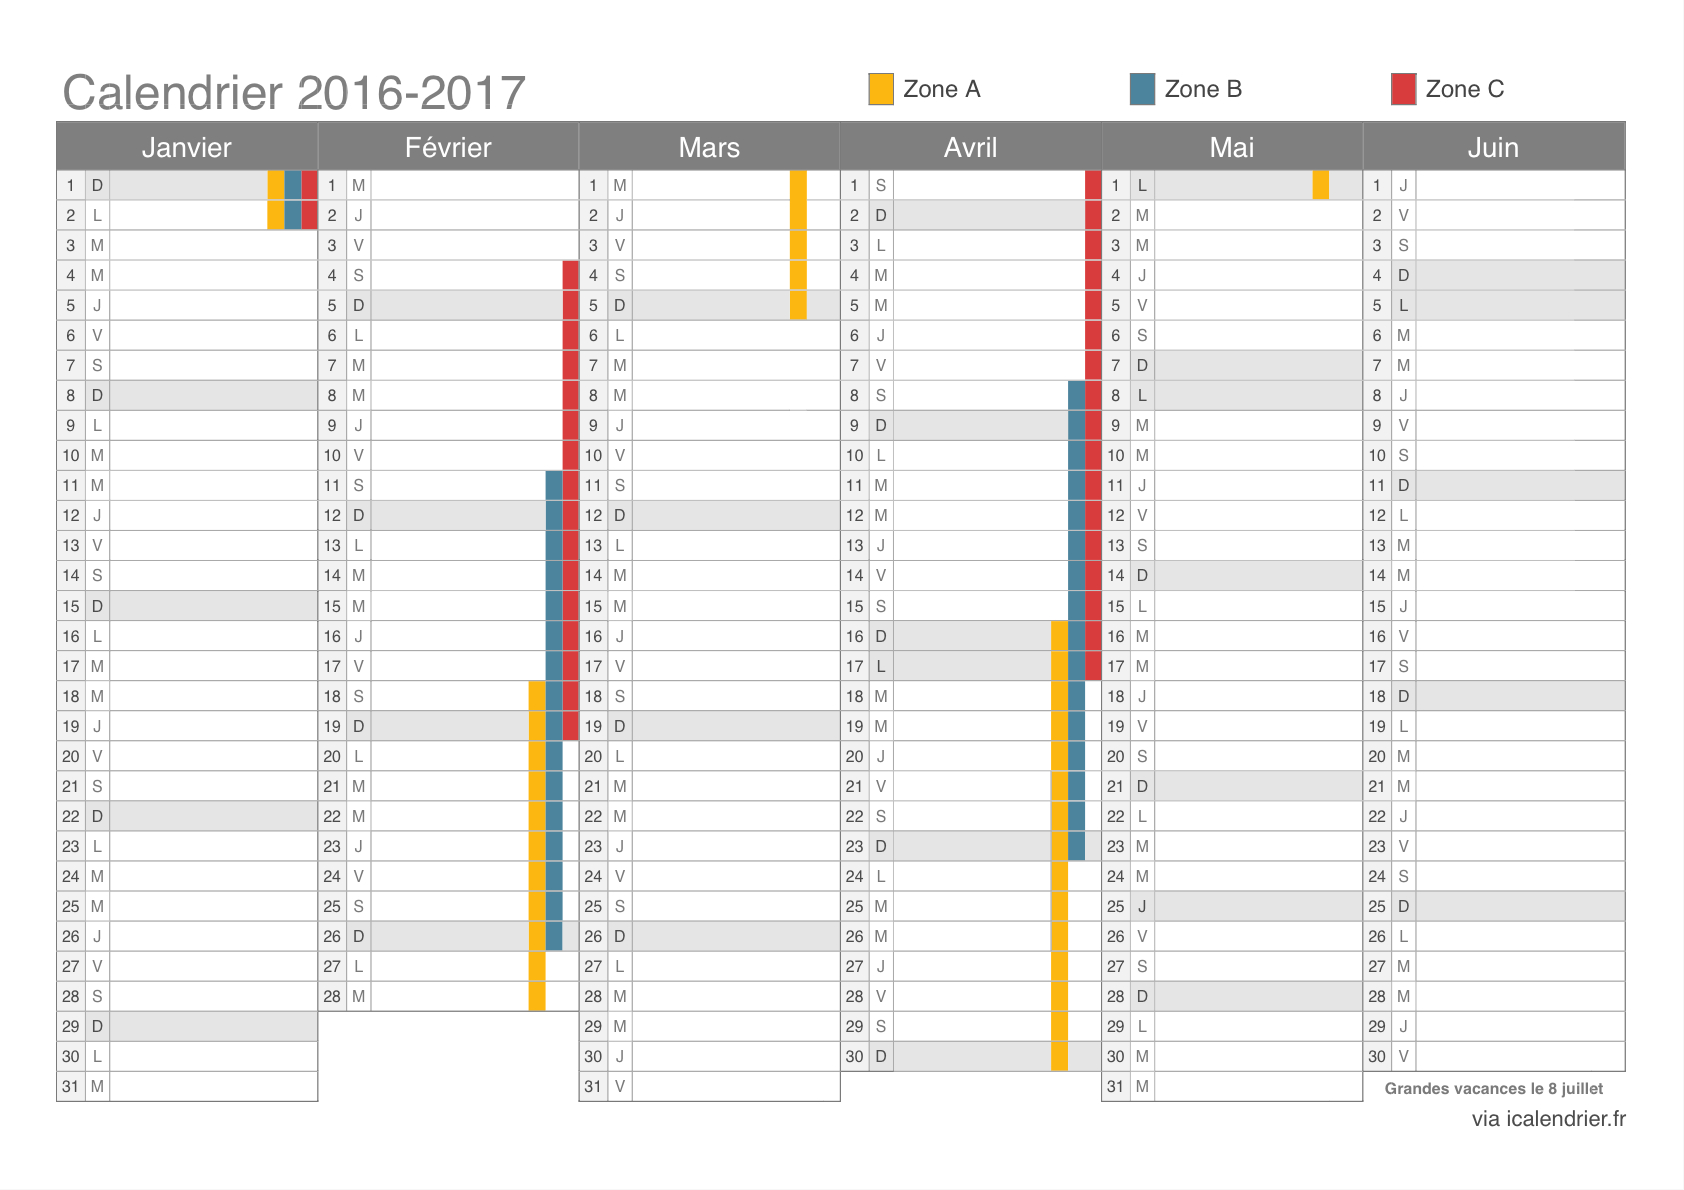 Vacances Scolaires 2016-2017 - Dates - Icalendrier tout Calendrier 2017 À Imprimer Avec Vacances Scolaires